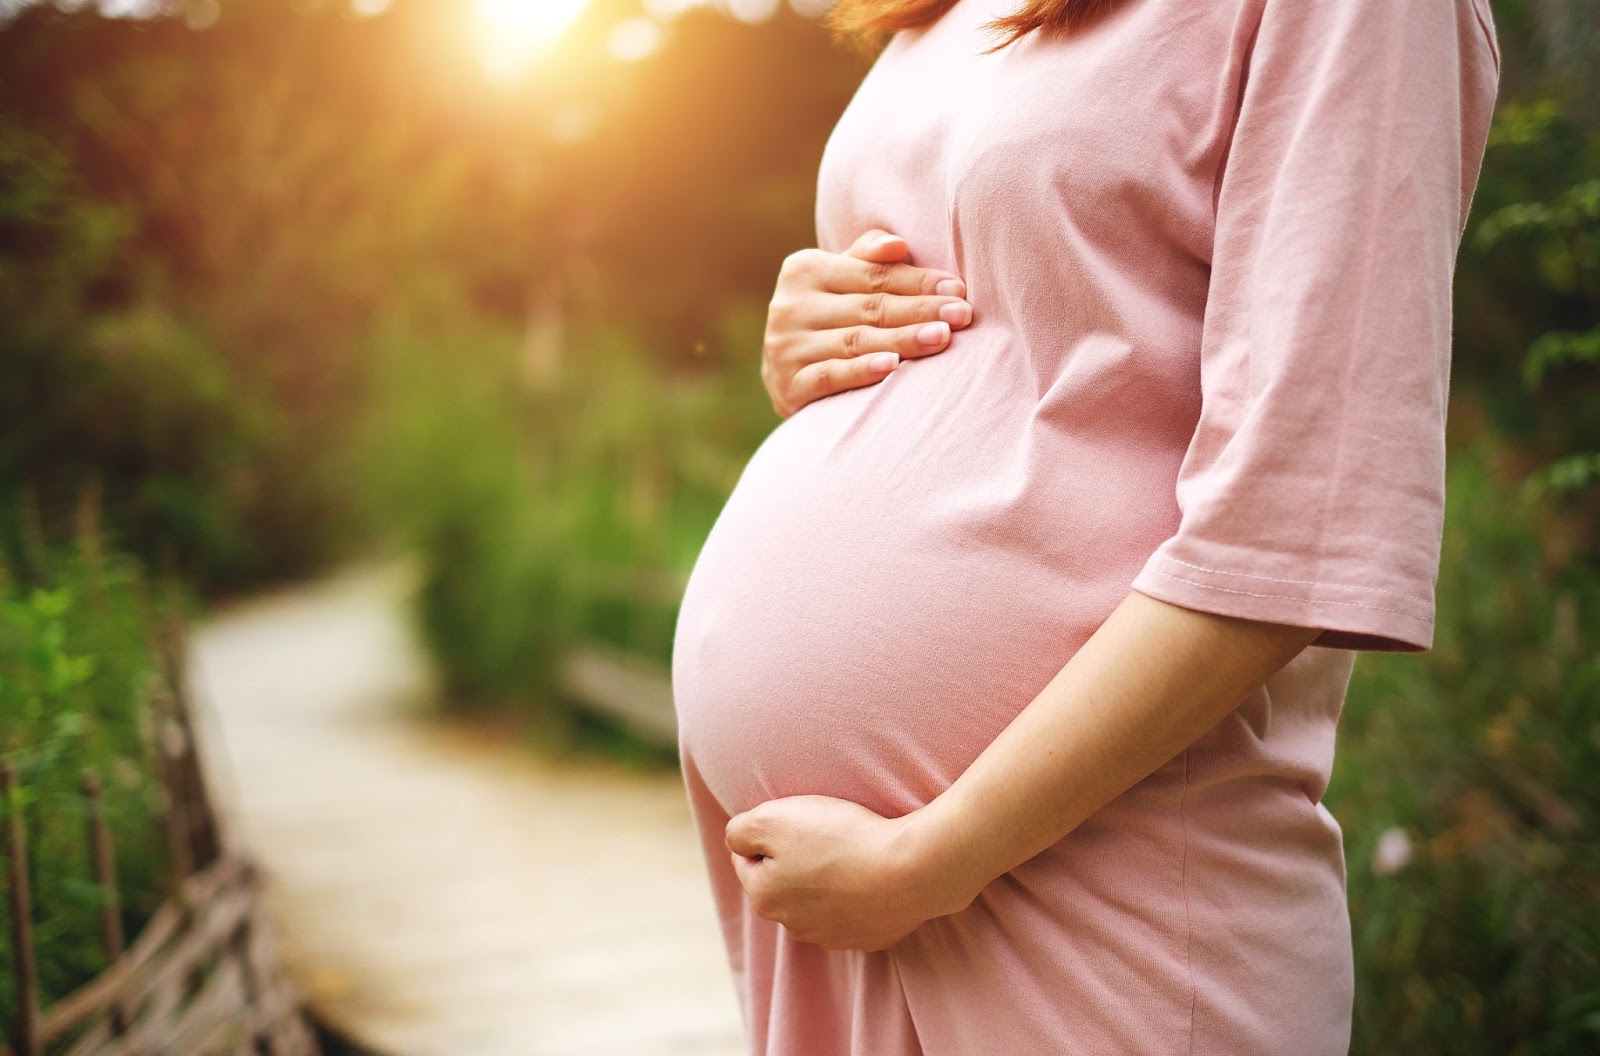 Kiêng kỵ khi mang thai: Tránh chụp ảnh nửa thân, chụp đen trắng